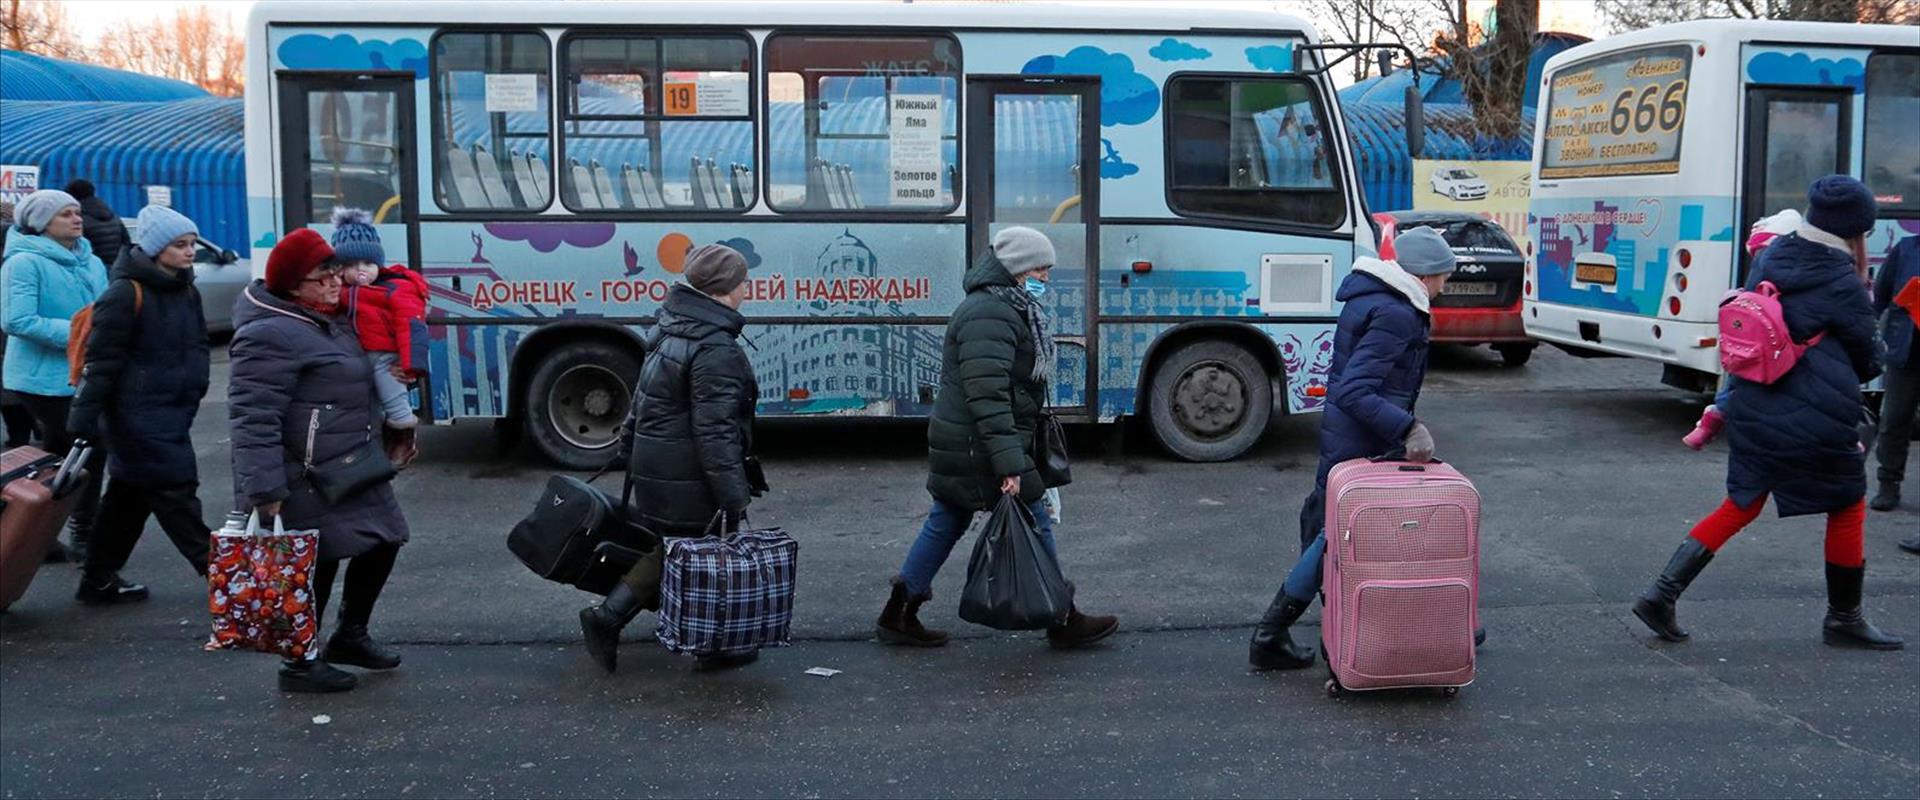 פליטים רוסיה